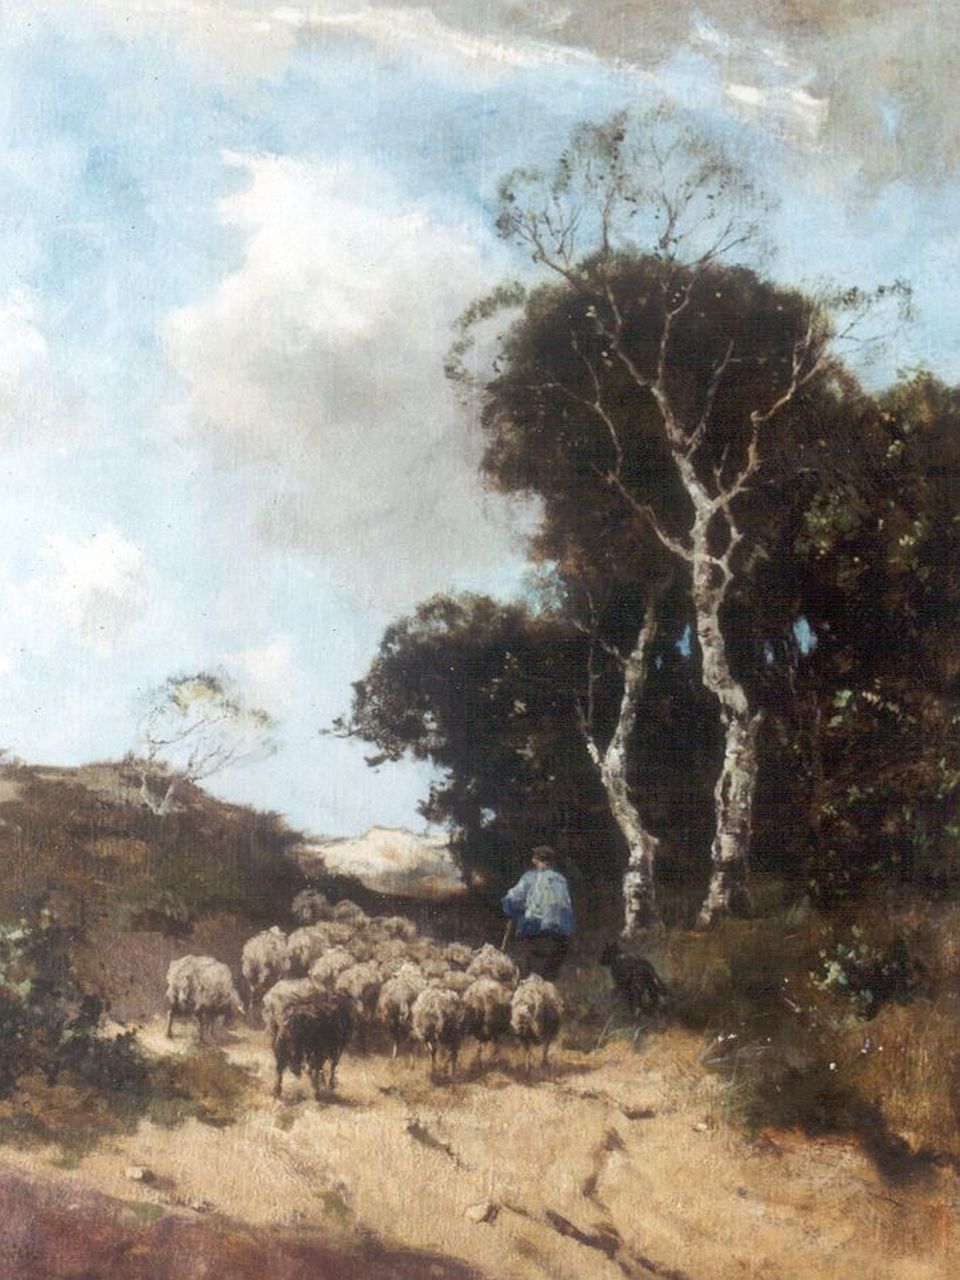 Scherrewitz J.F.C.  | Johan Frederik Cornelis Scherrewitz, Herder met schaapskudde op de hei, olieverf op doek 65,5 x 50,8 cm, gesigneerd linksonder